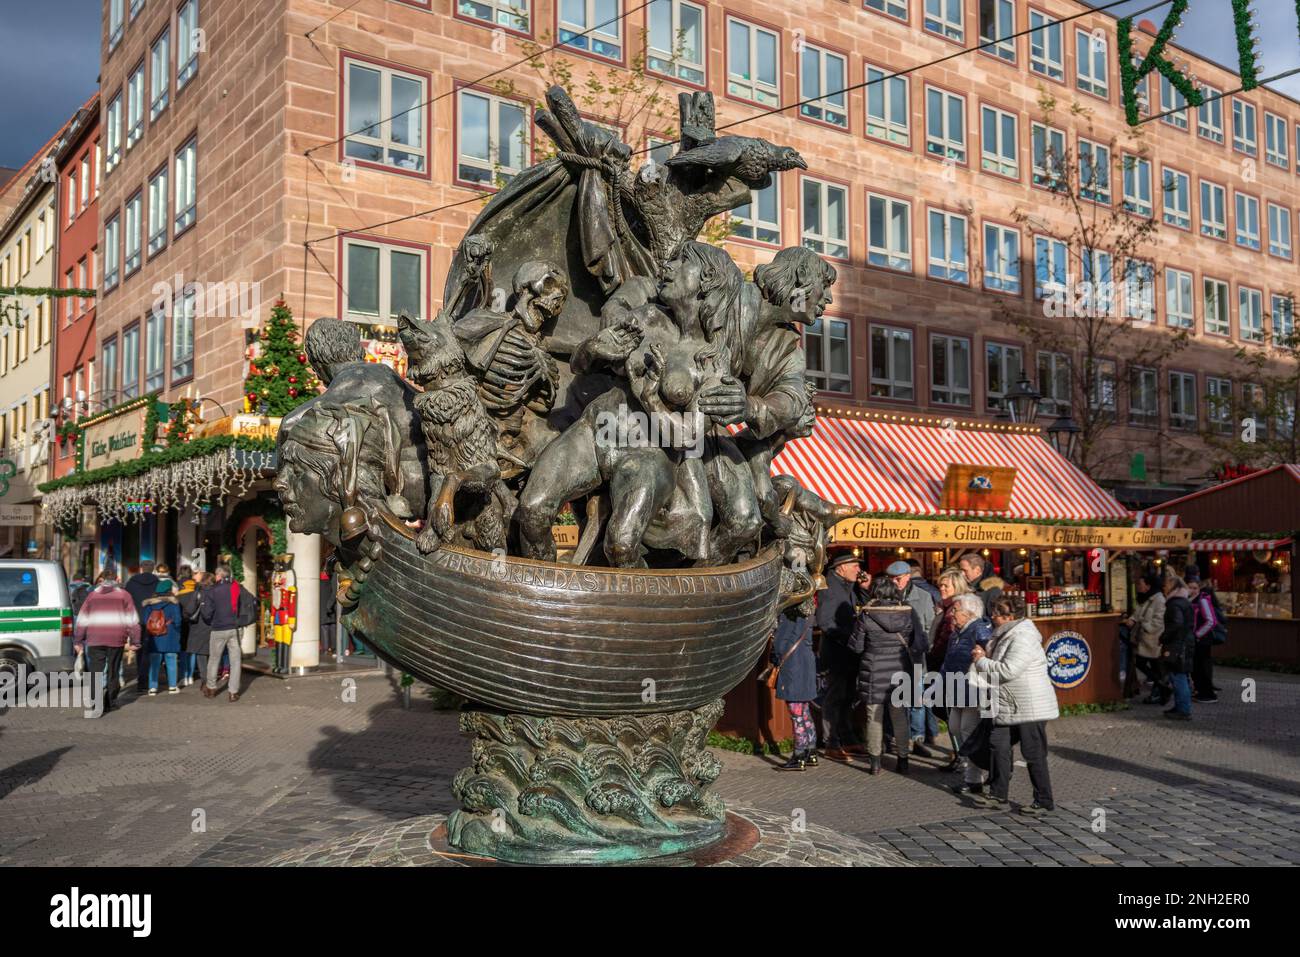 Schiff der Narren (das Narrenschiff) Skulptur - Nürnberg, Bayern, Deutschland Stockfoto